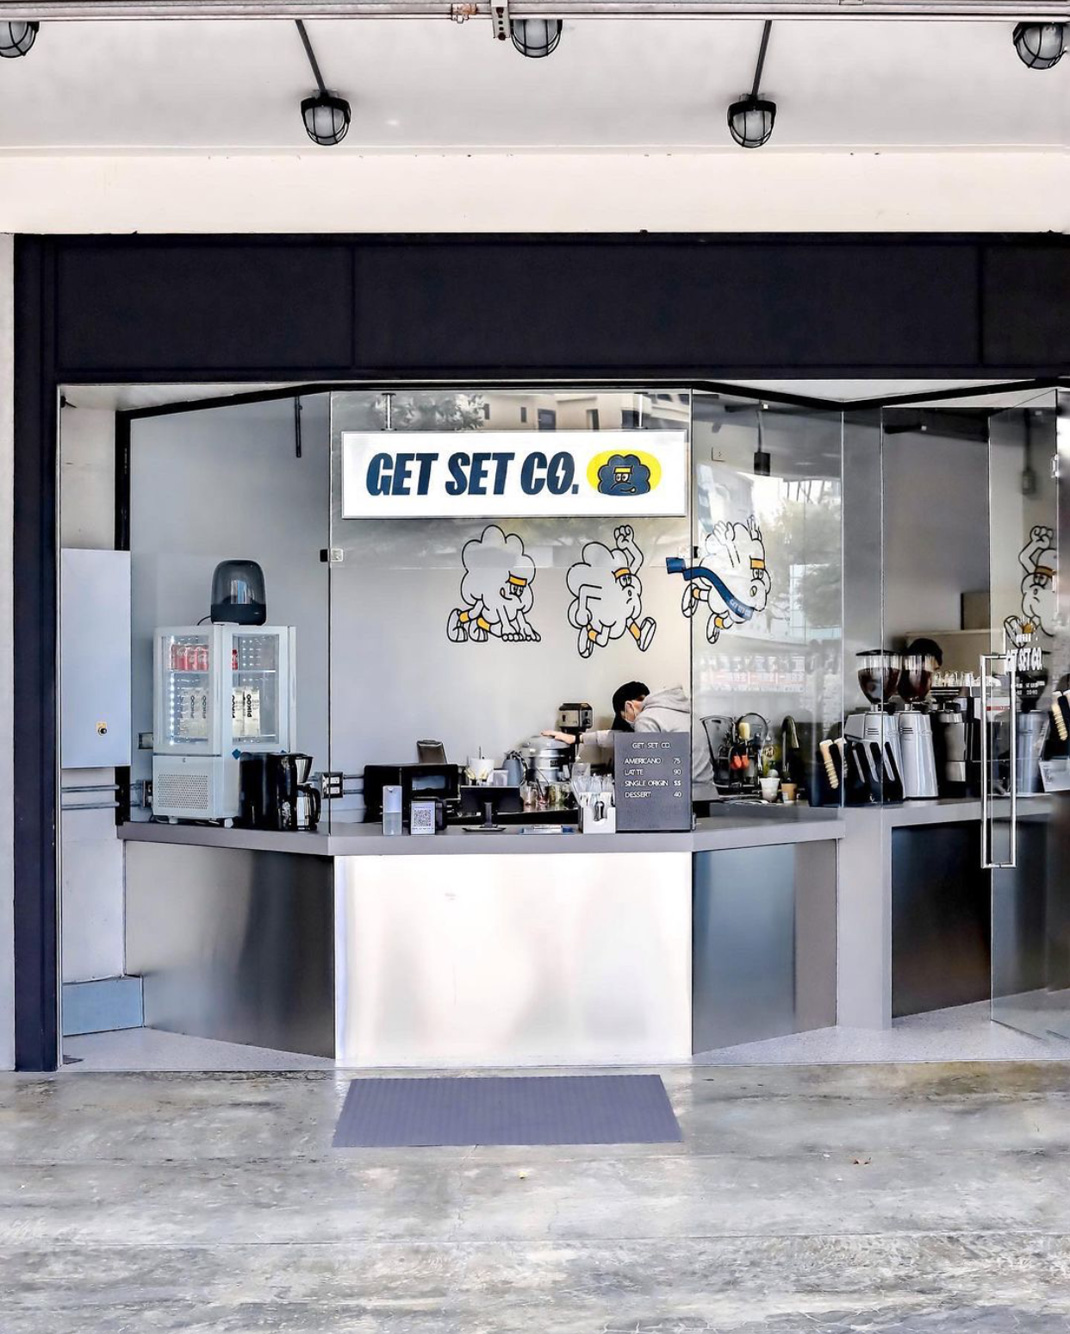 咖啡预备备 Get Set Co 台湾 高雄 咖啡馆 插画设计 手绘 logo设计 vi设计 空间设计